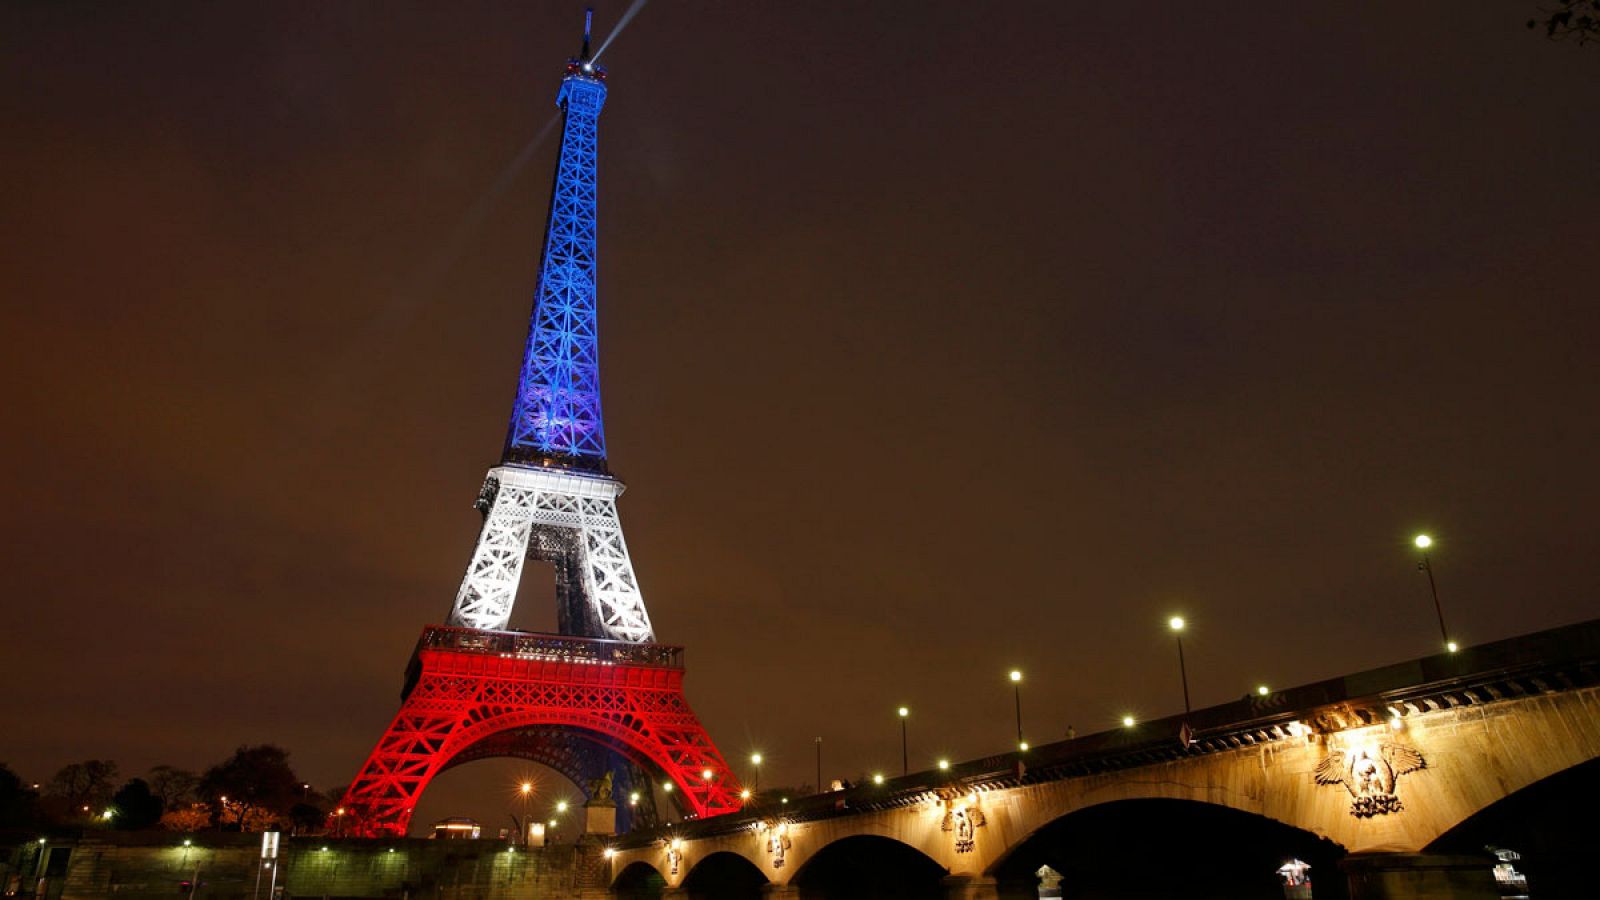 La torre Eiffel iluminada con los colores de la bandera francesa tras los atentados terroristas en París